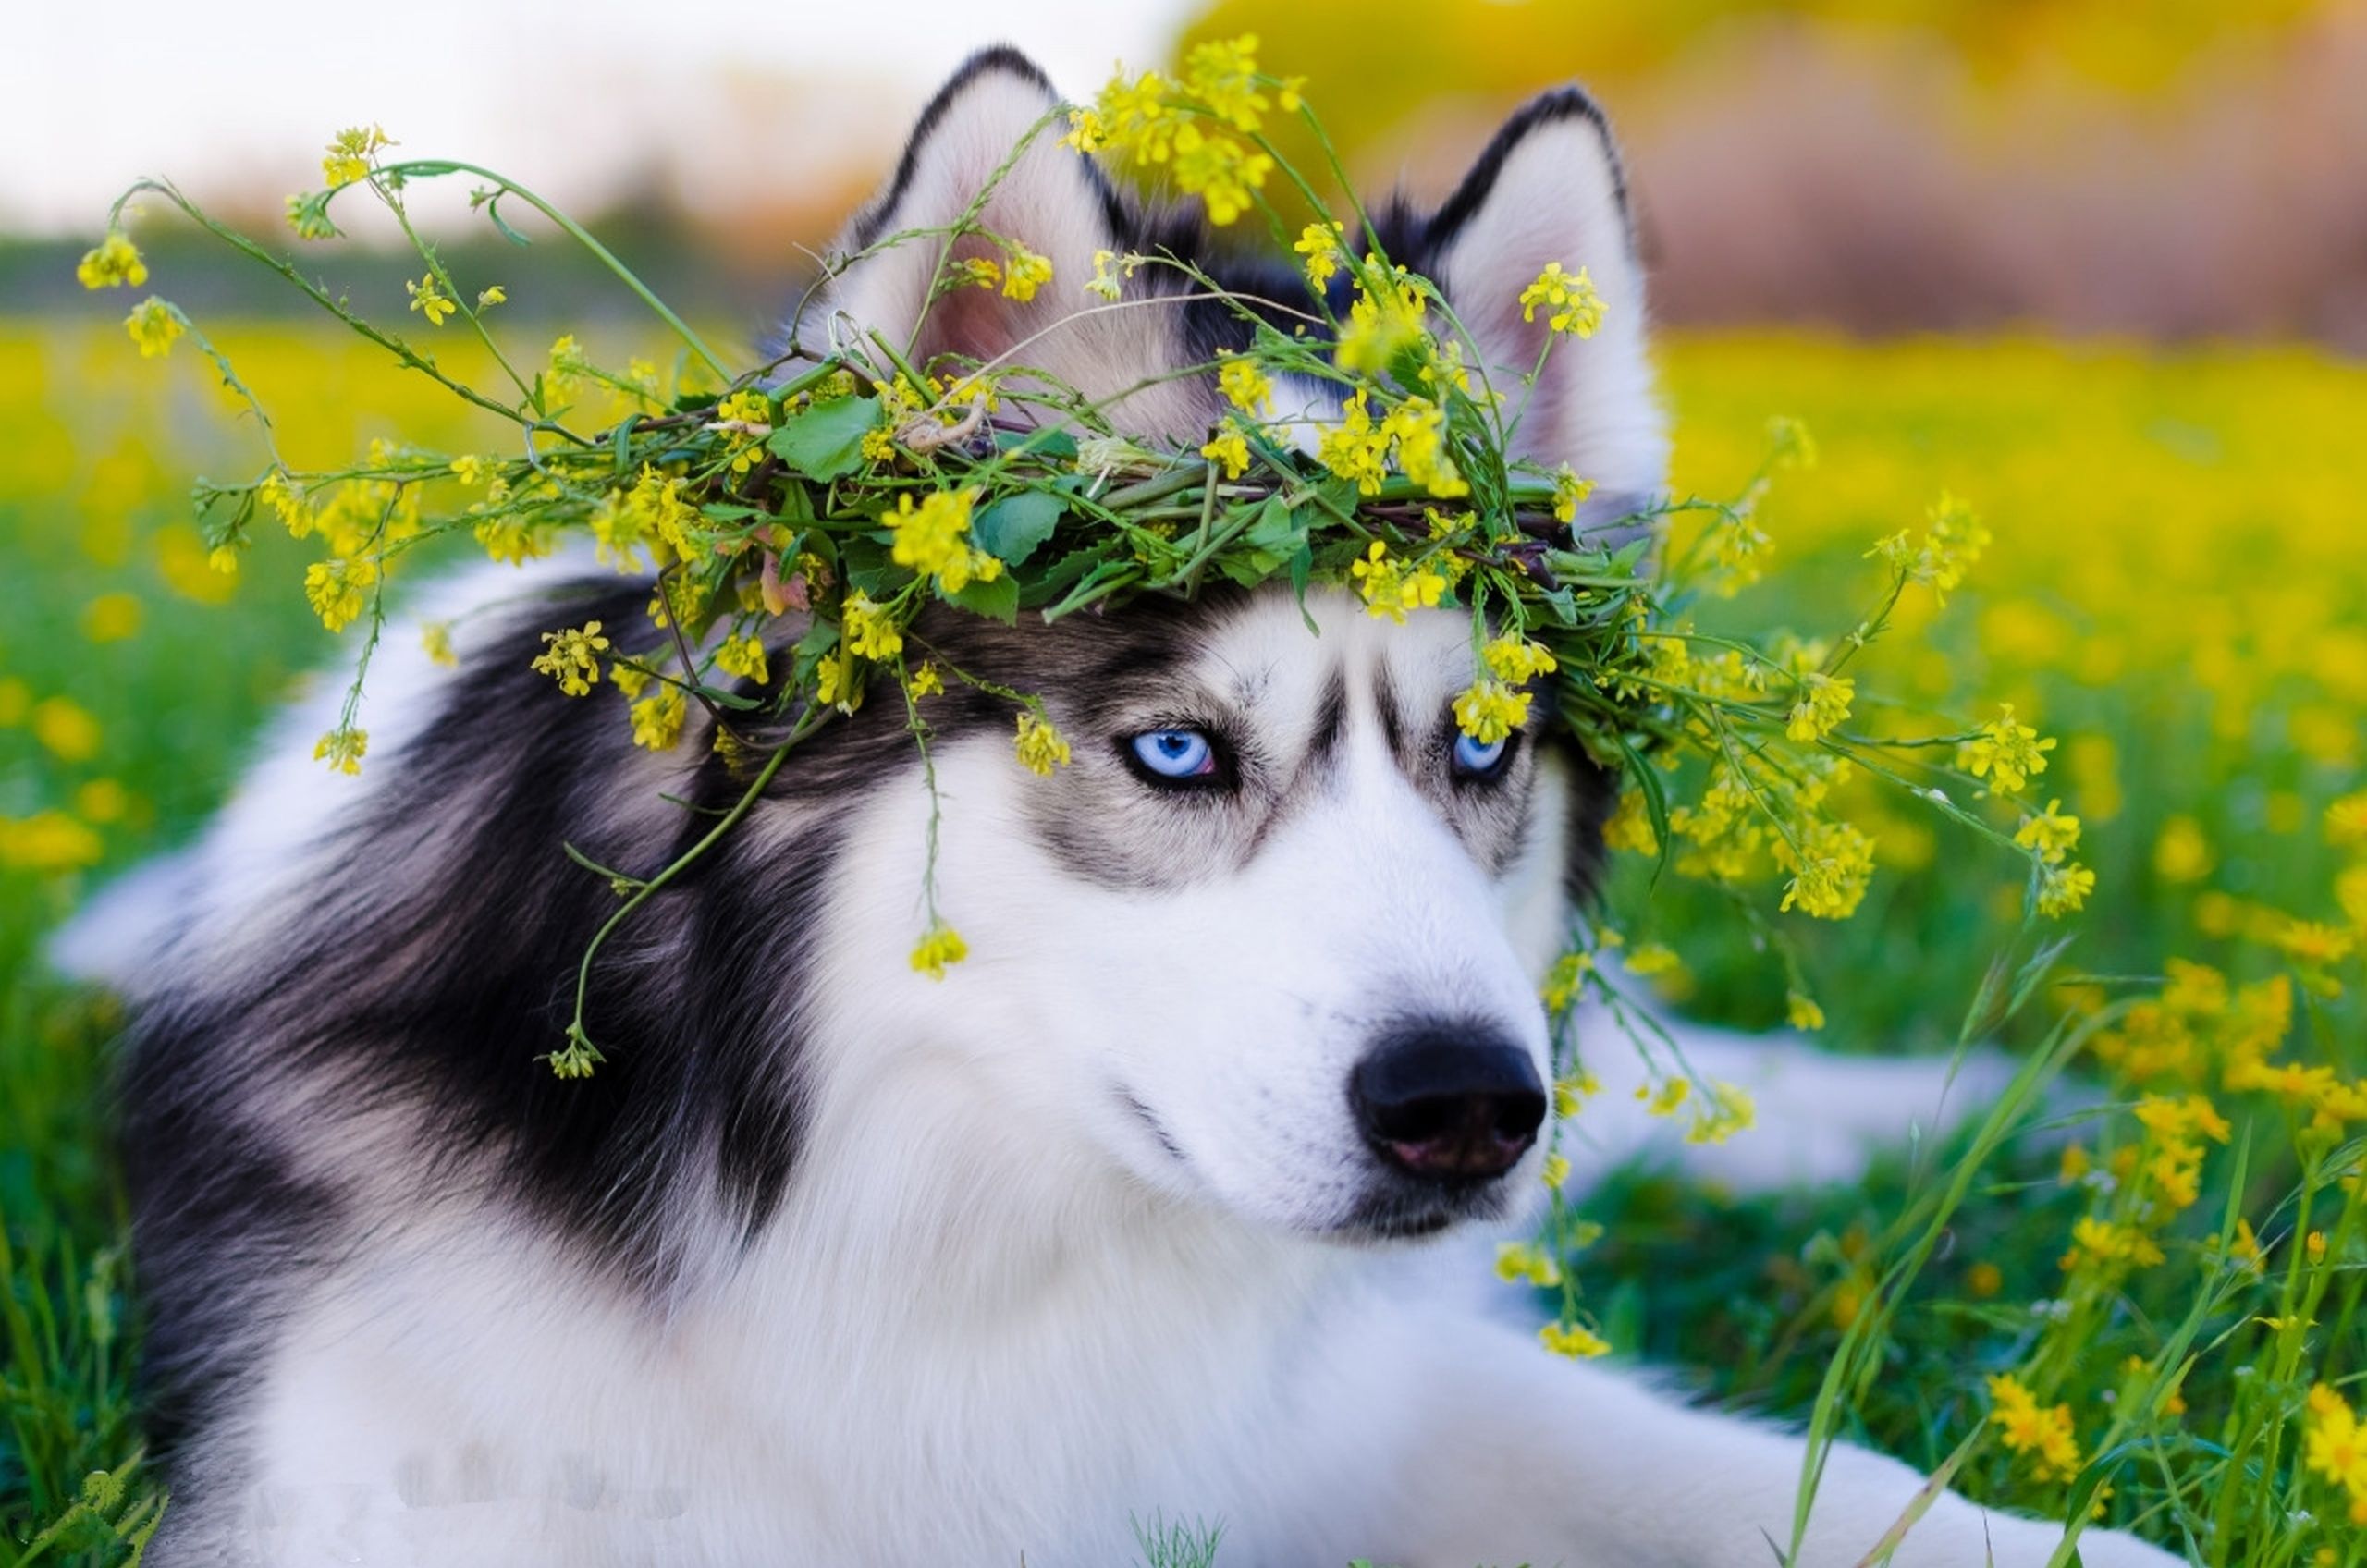 عکس سگ هاسکی پر ابهت با چشمان زیبا با کیفیت بالا